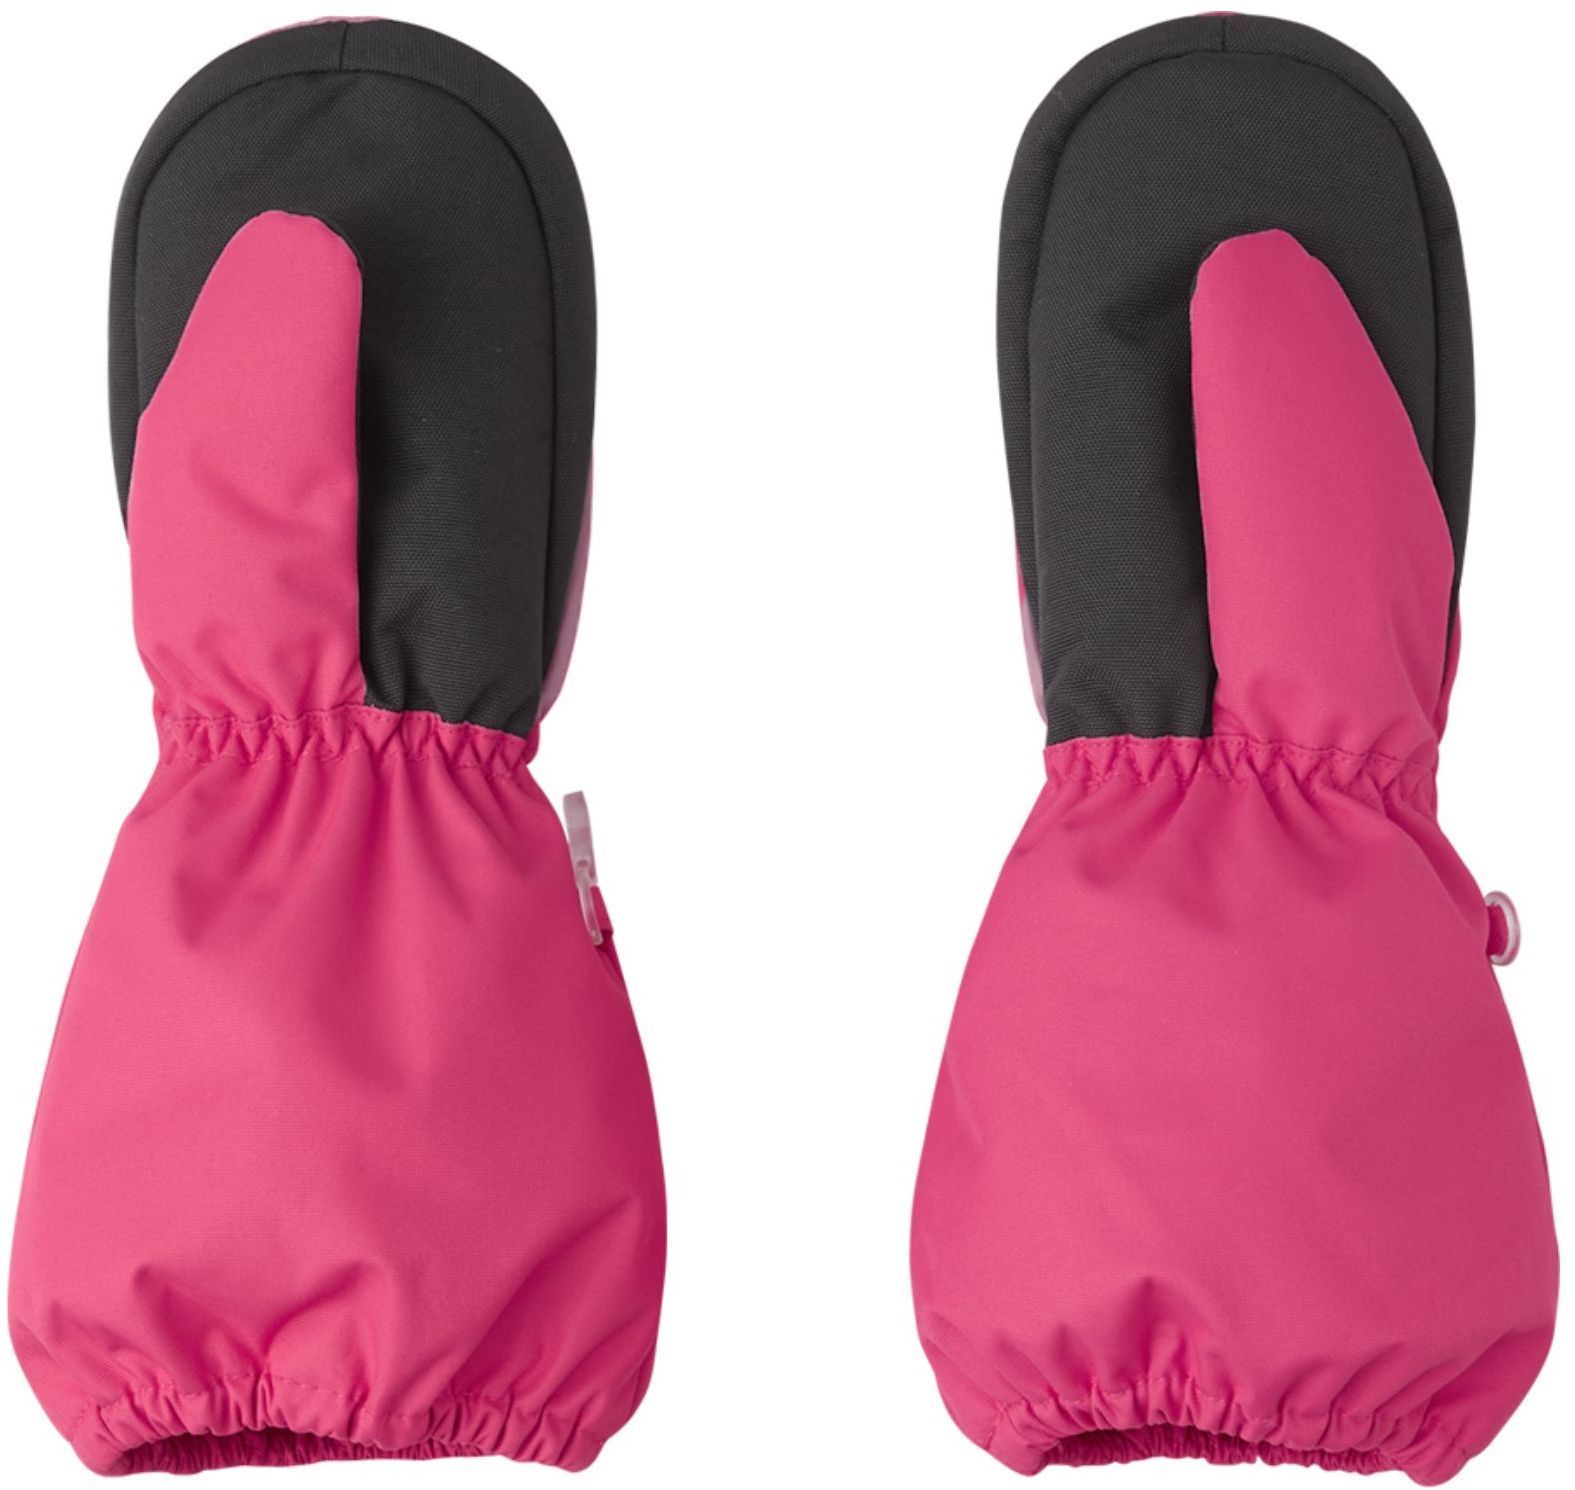 527354-3530_Reima Nouto - Azalea pink detske zimne rukavice